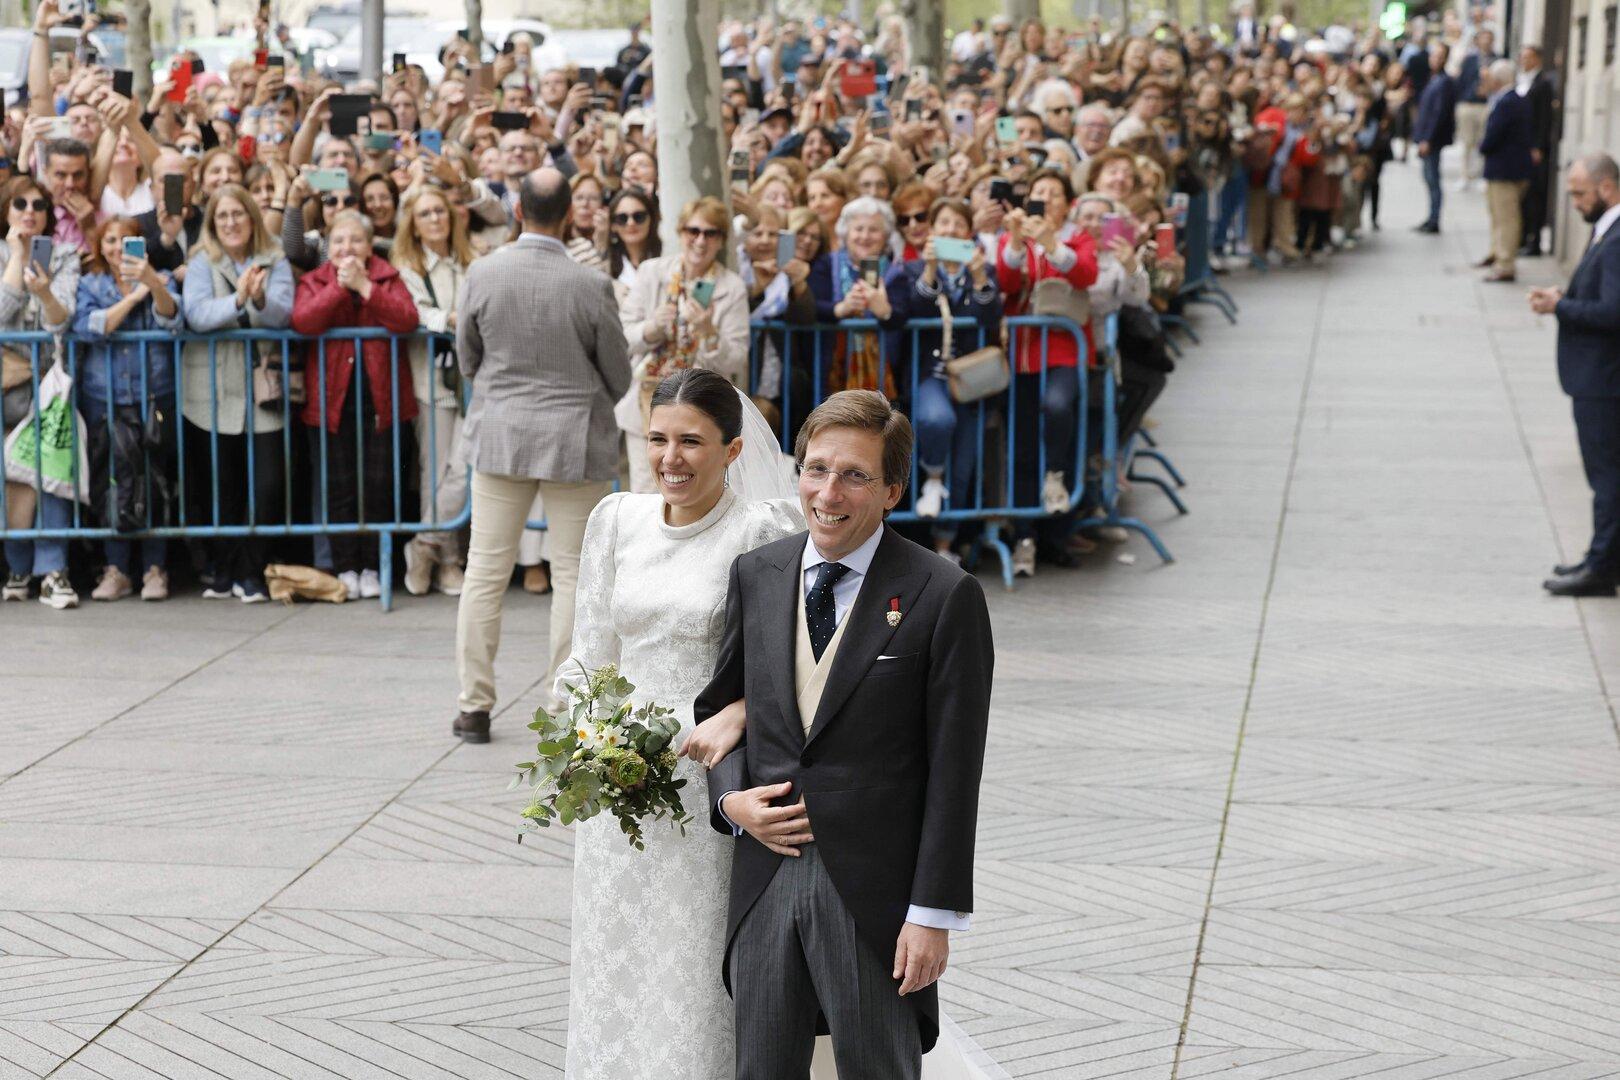 Prominentenhochzeit: Bürgermeister heiratete Anwältin in Madrid